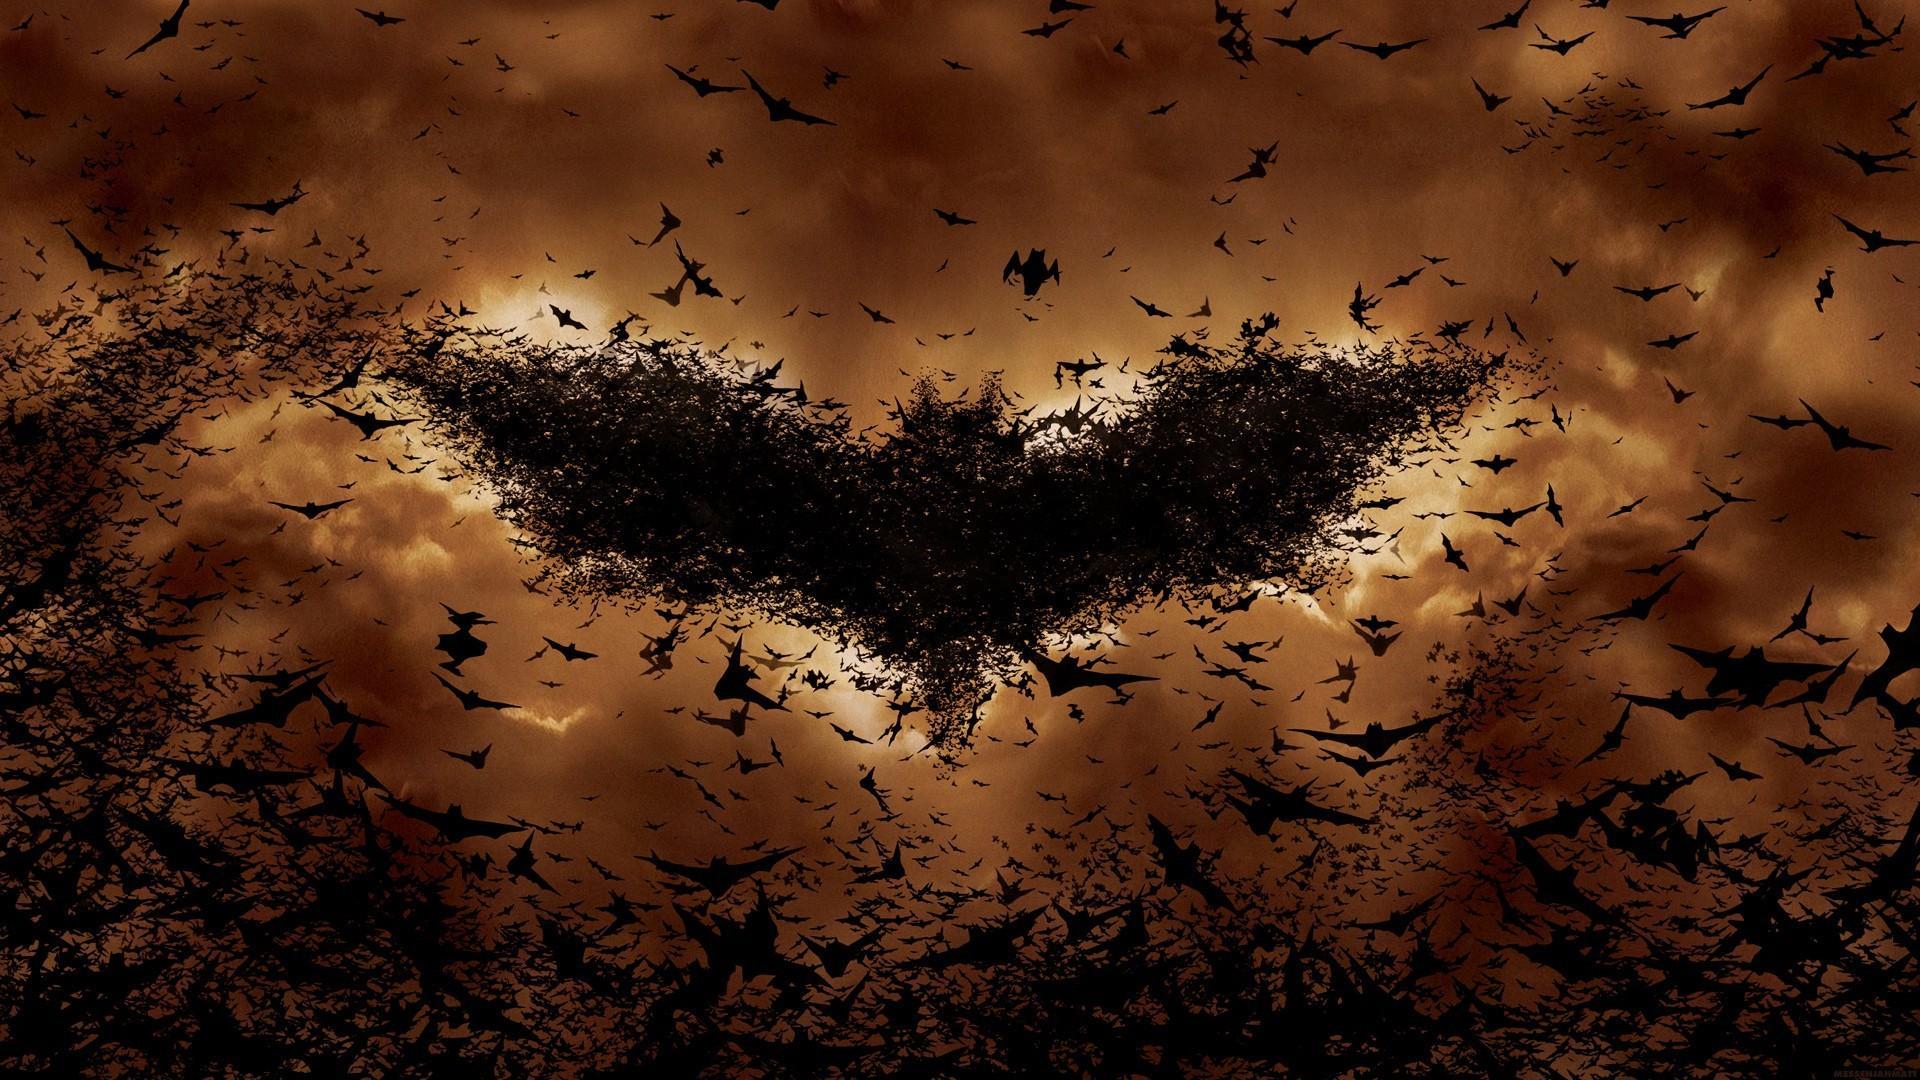 Batman begins bats orange wallpaper